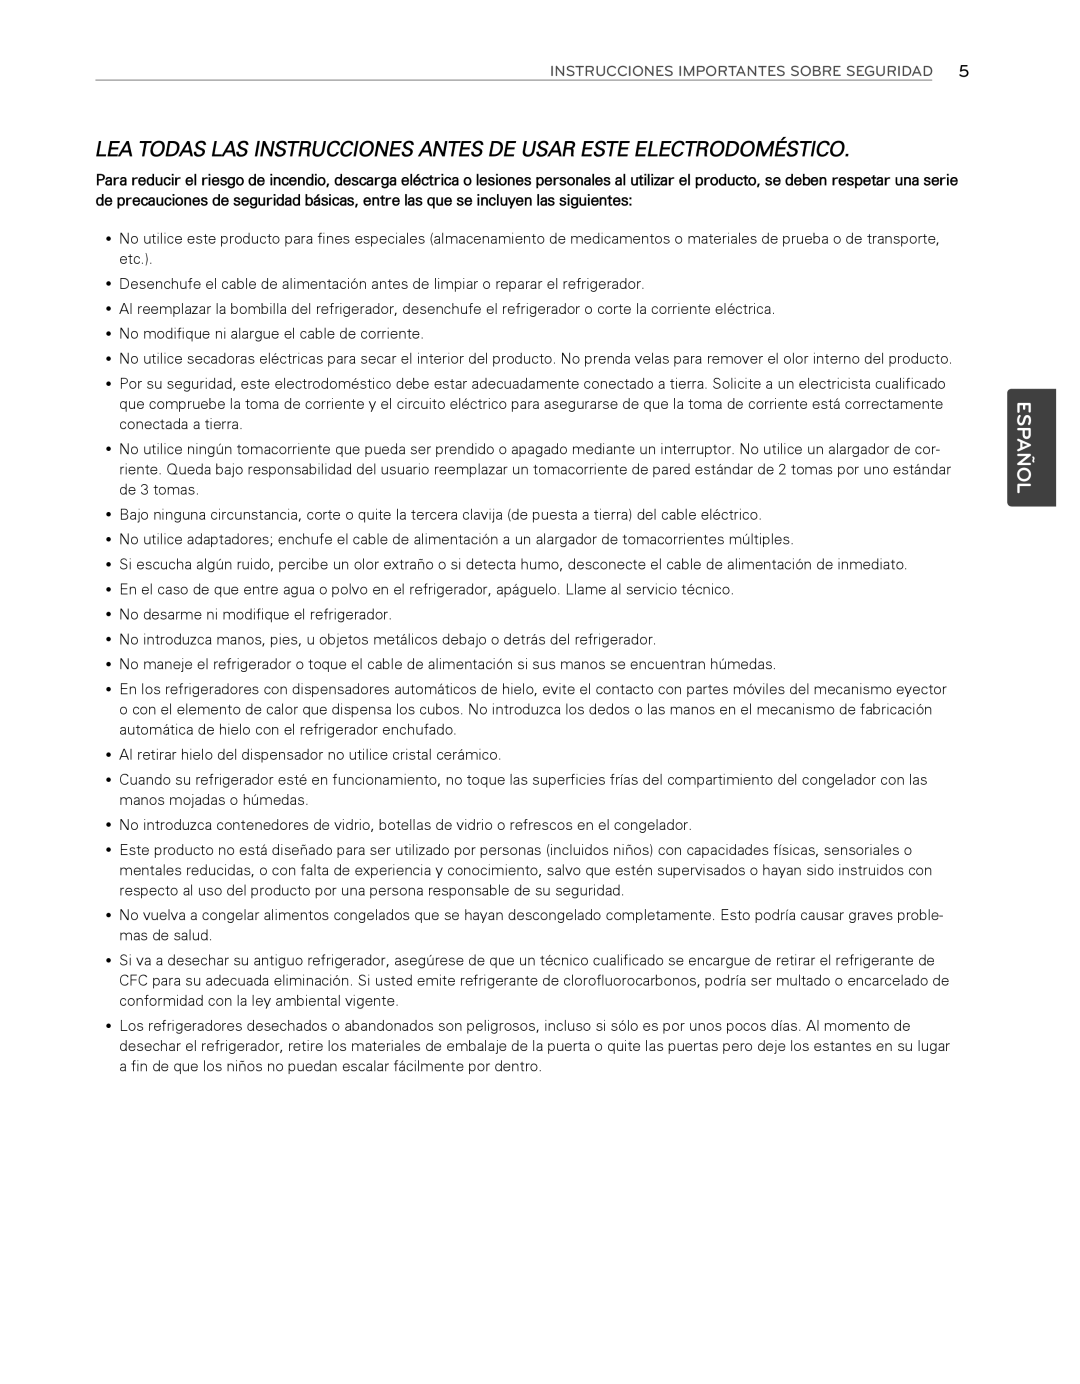 LG Electronics LFX25974ST, LFX25974SB owner manual Español, Instrucciones Importantes Sobre Seguridad 